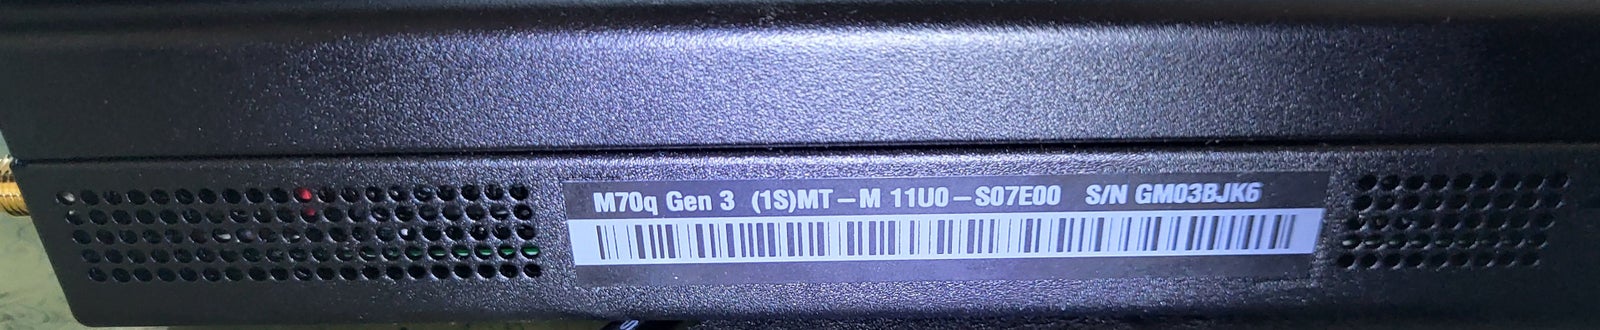 Lenovo, M70q Tiny, Intel core i5 12400T Ghz